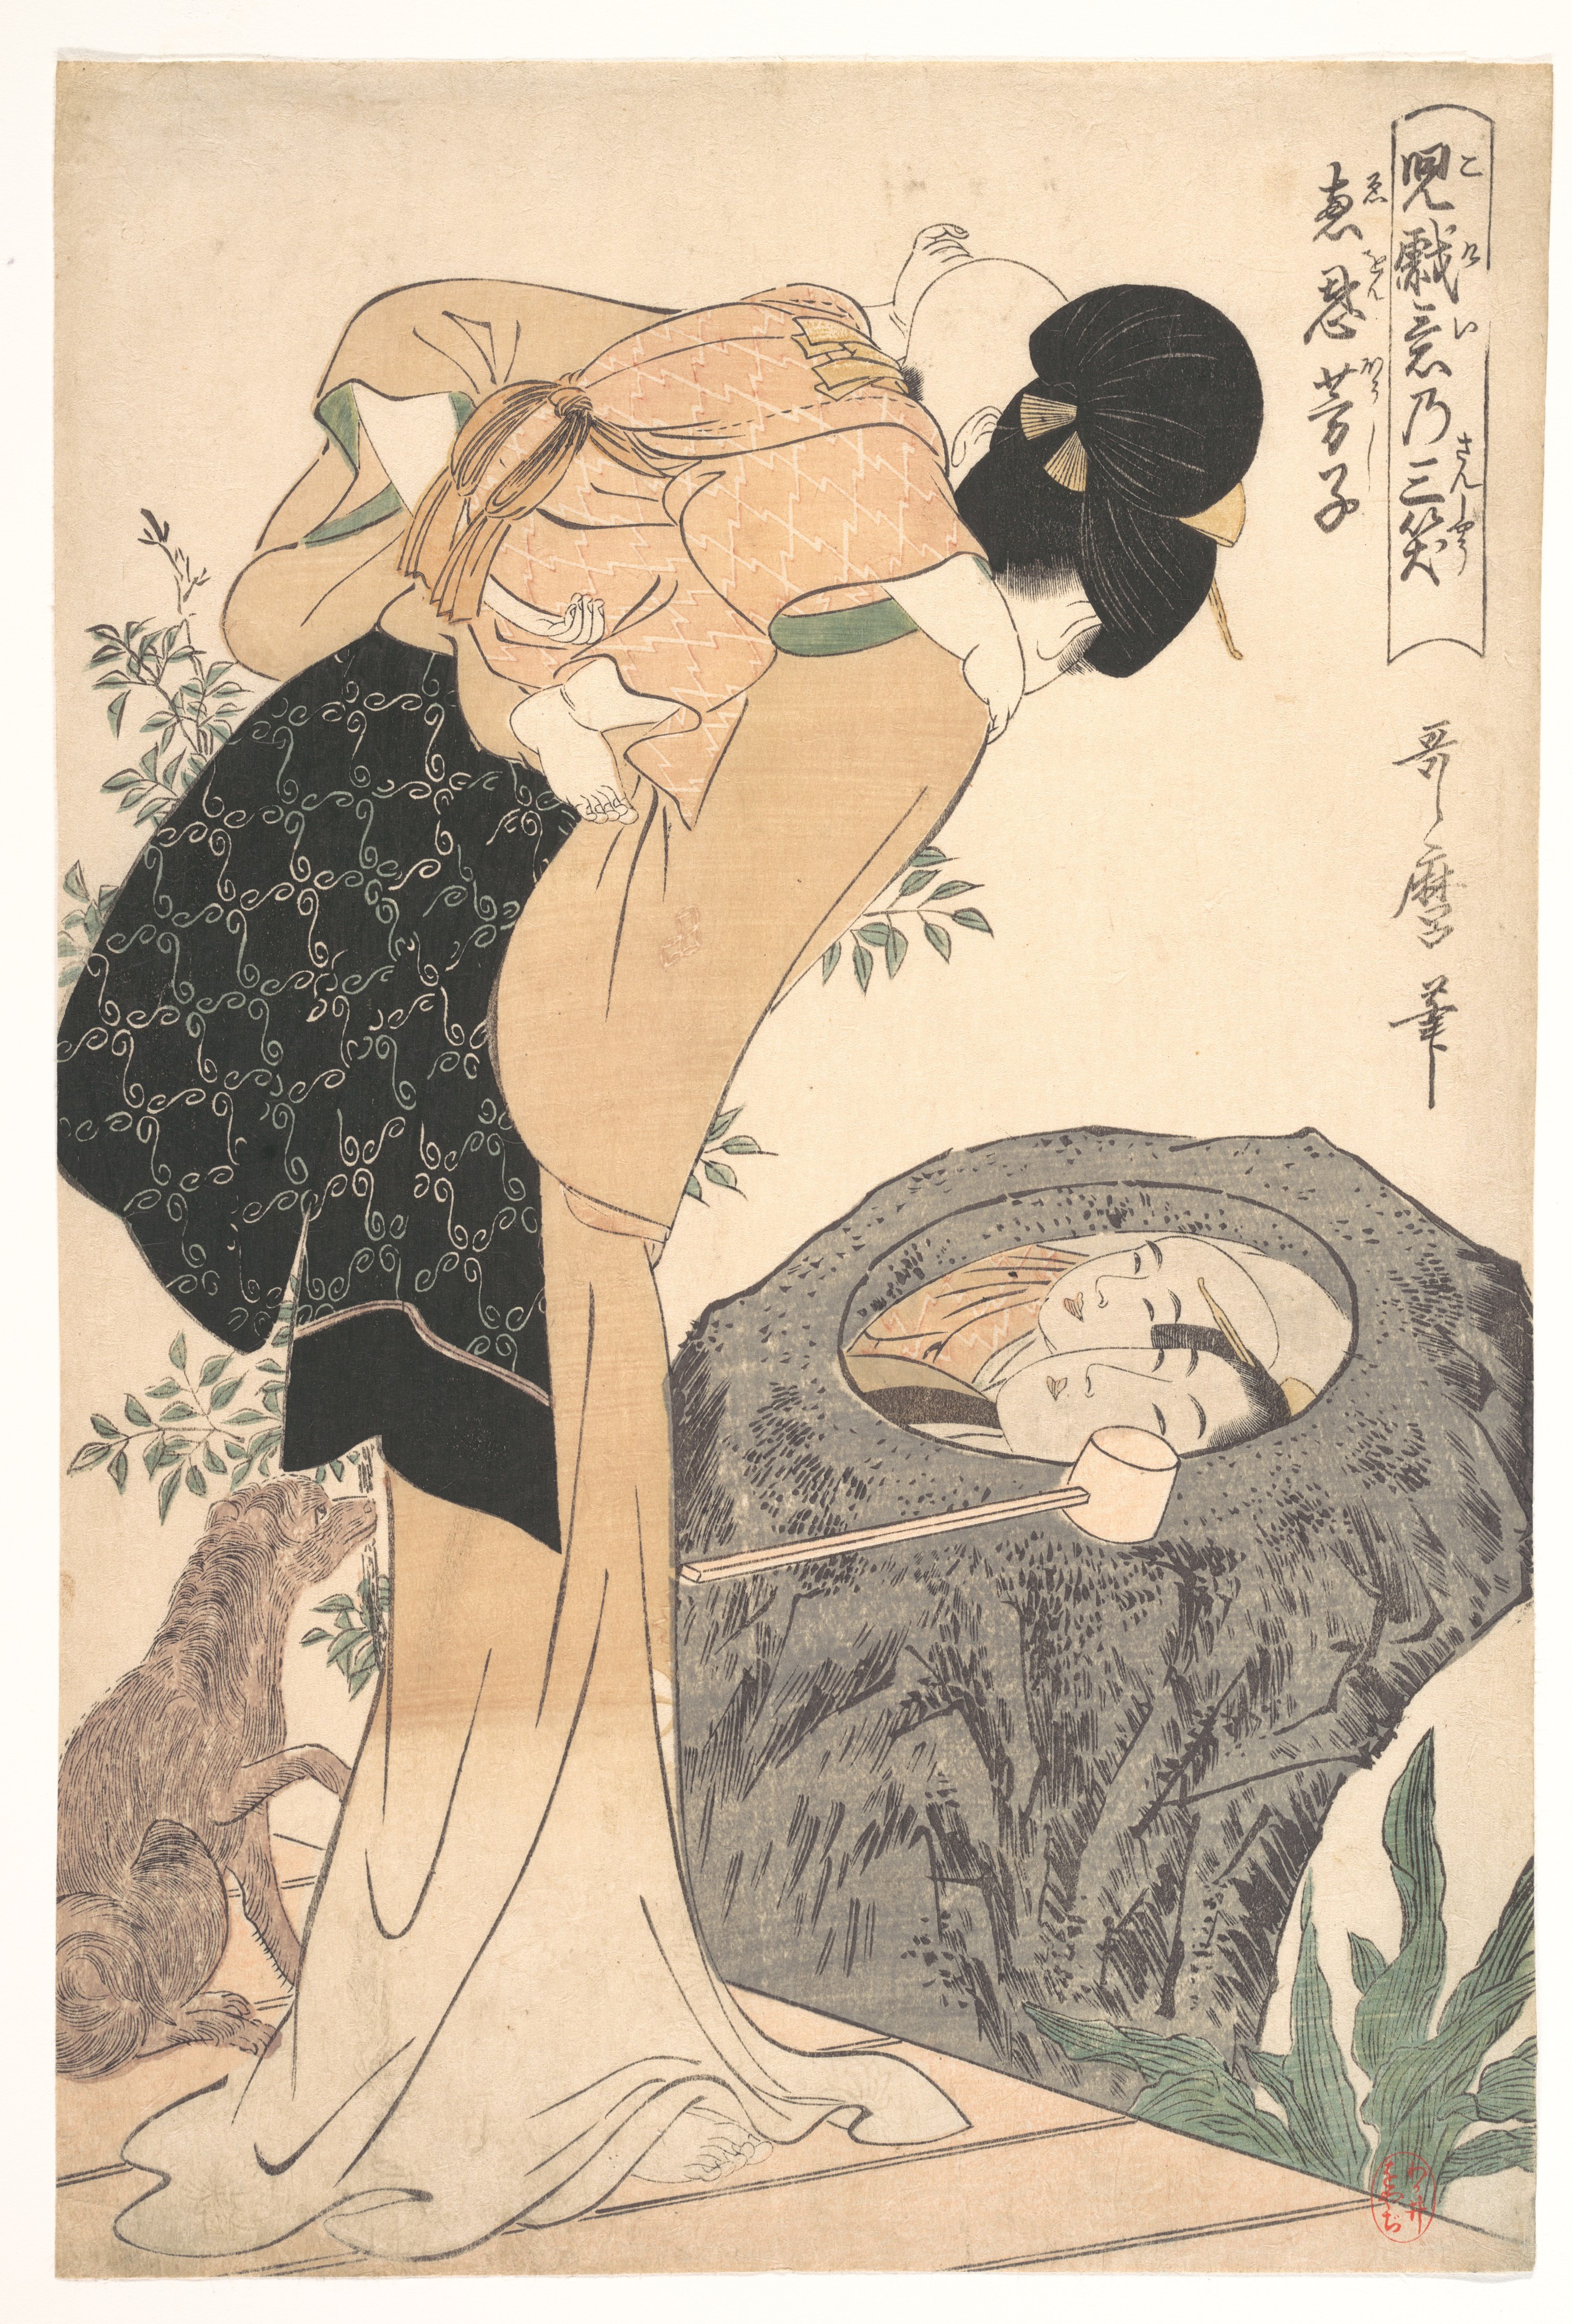 Artworks By Kitagawa Utamaro 1753 1806 1446 работ Часть 2